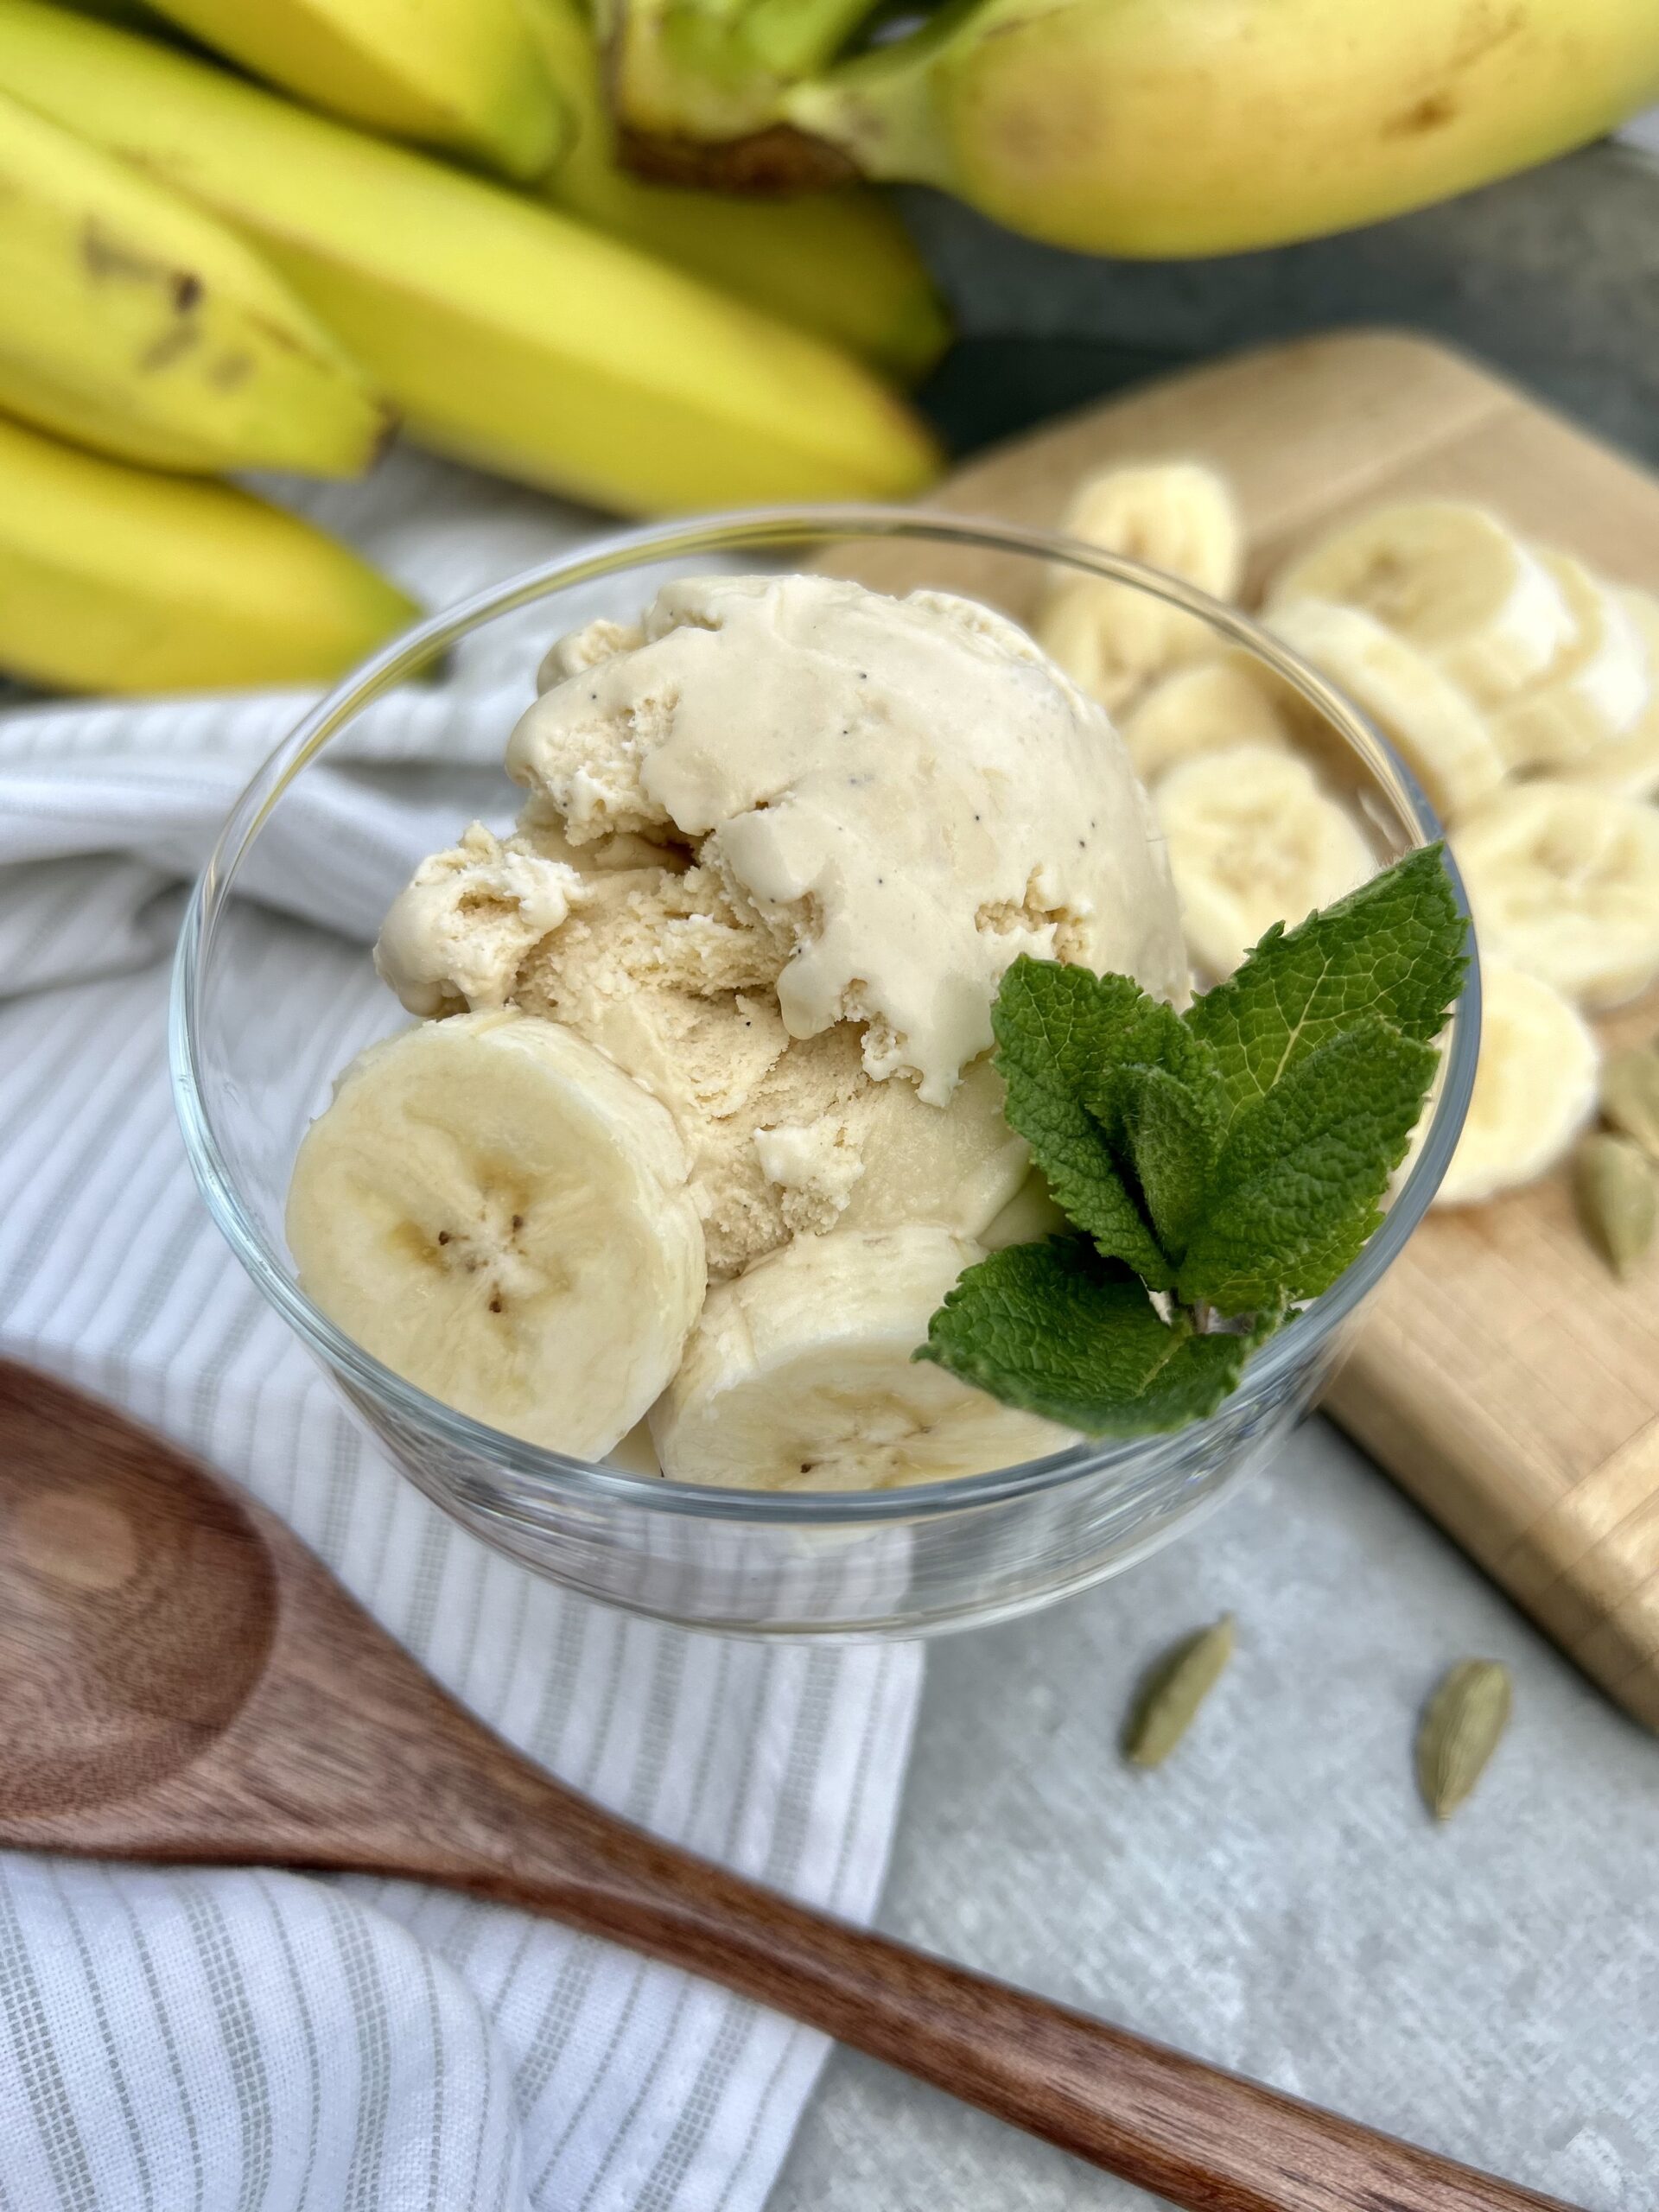 Banana Cardamom Ice Cream - Seasoned with Joy